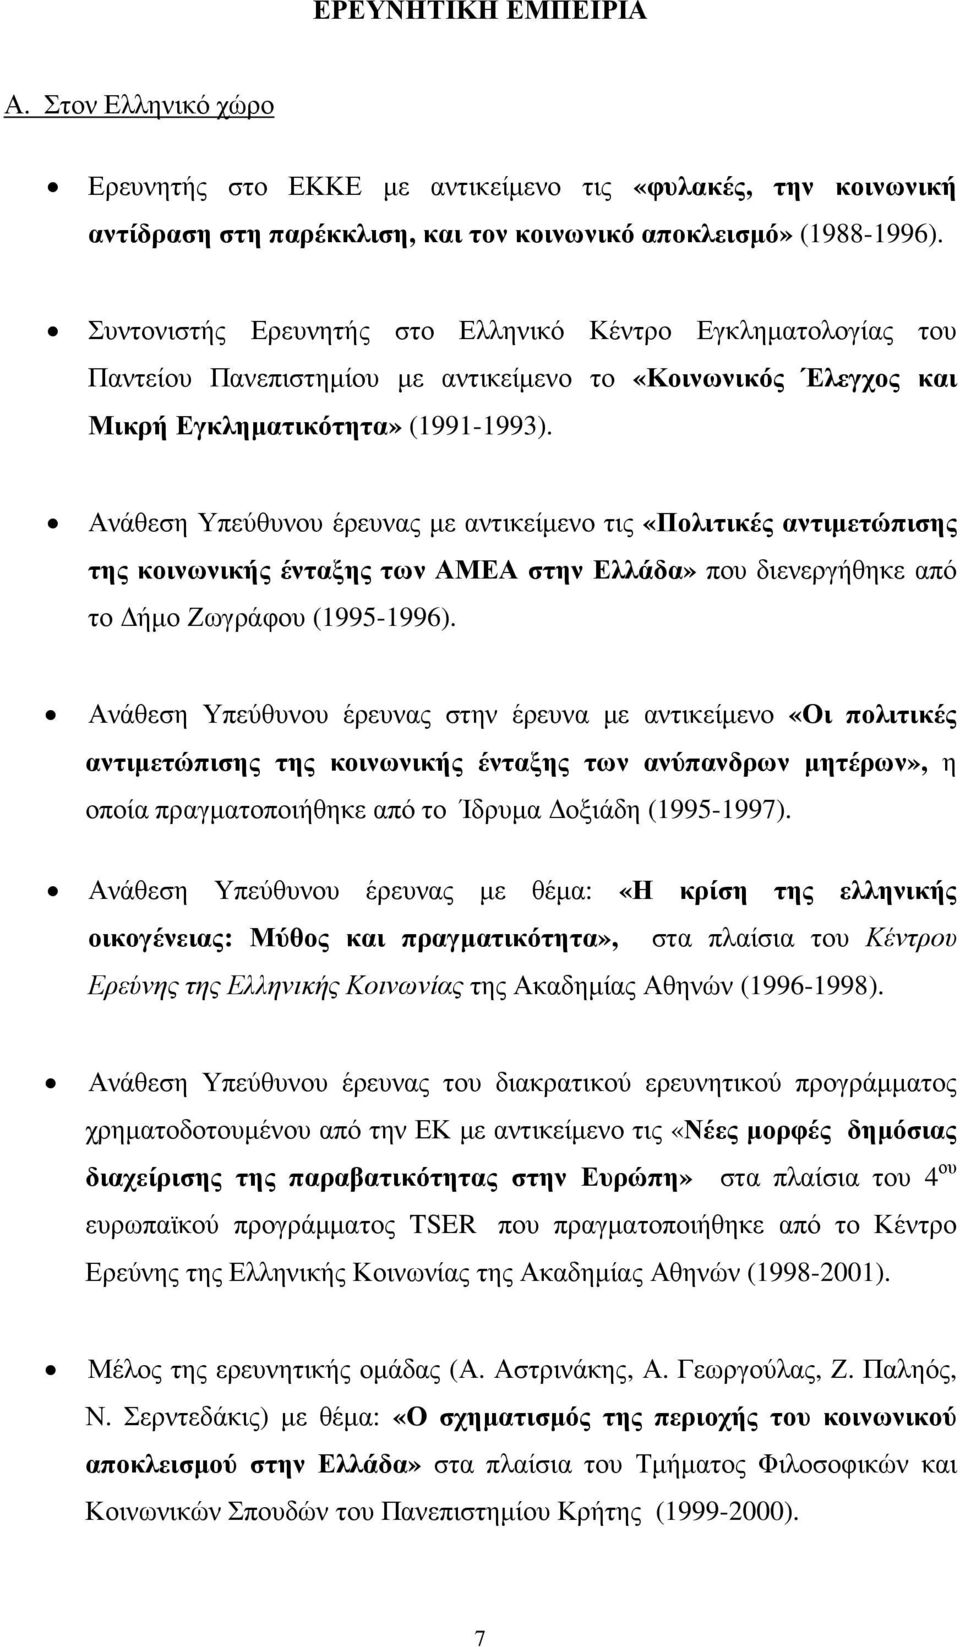 Ανάθεση Υπεύθυνου έρευνας µε αντικείµενο τις «Πολιτικές αντιµετώπισης της κοινωνικής ένταξης των ΑΜΕΑ στην Ελλάδα» που διενεργήθηκε από το ήµο Ζωγράφου (1995-1996).